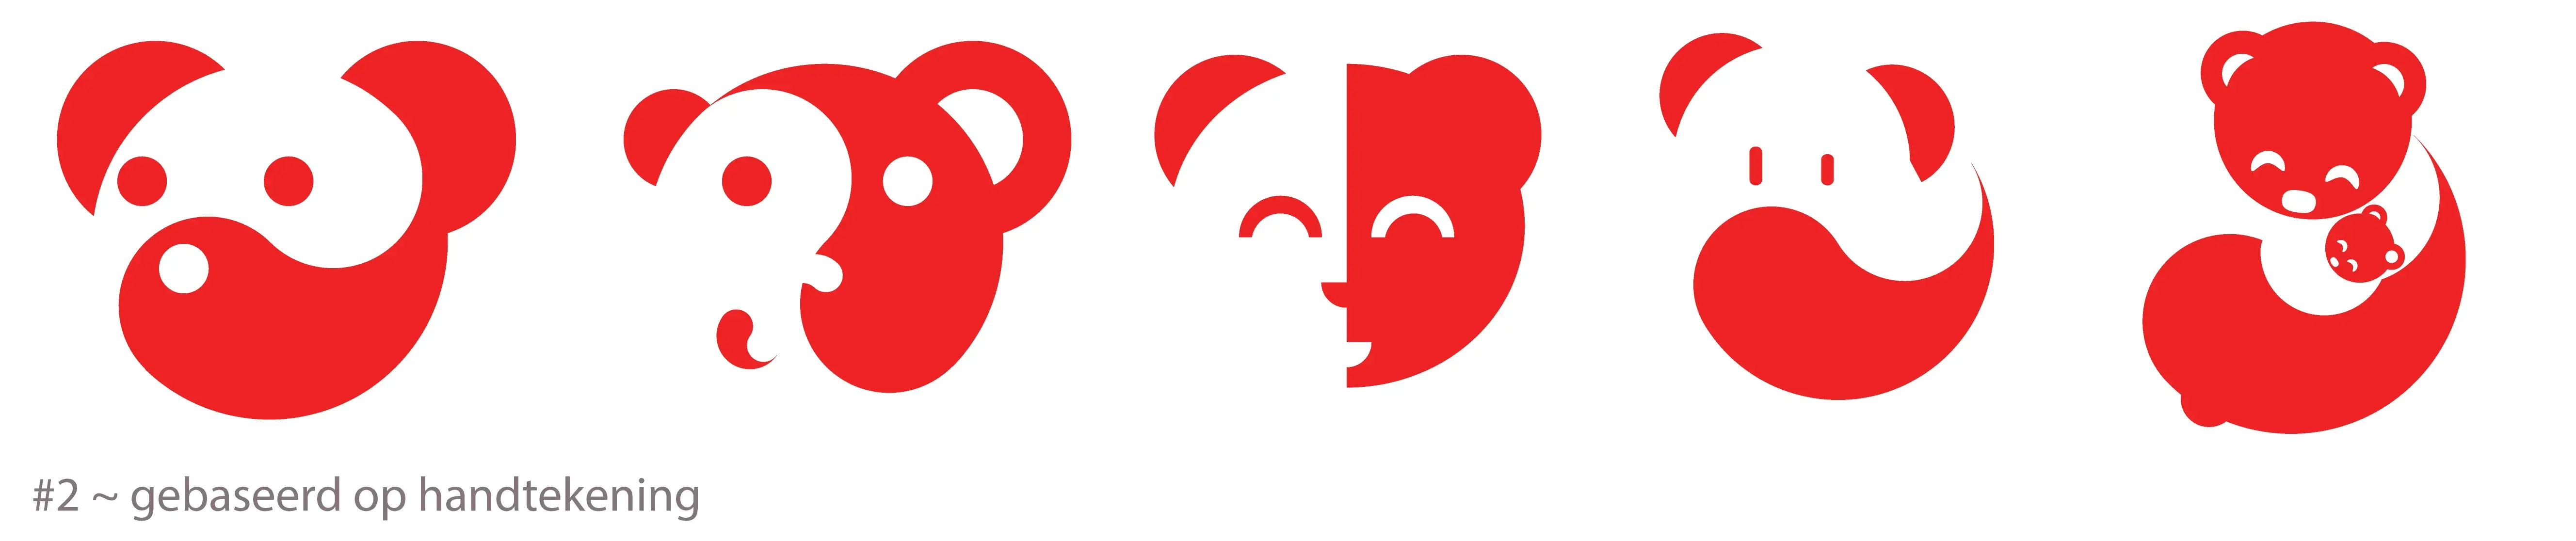 Logos rode panda 1